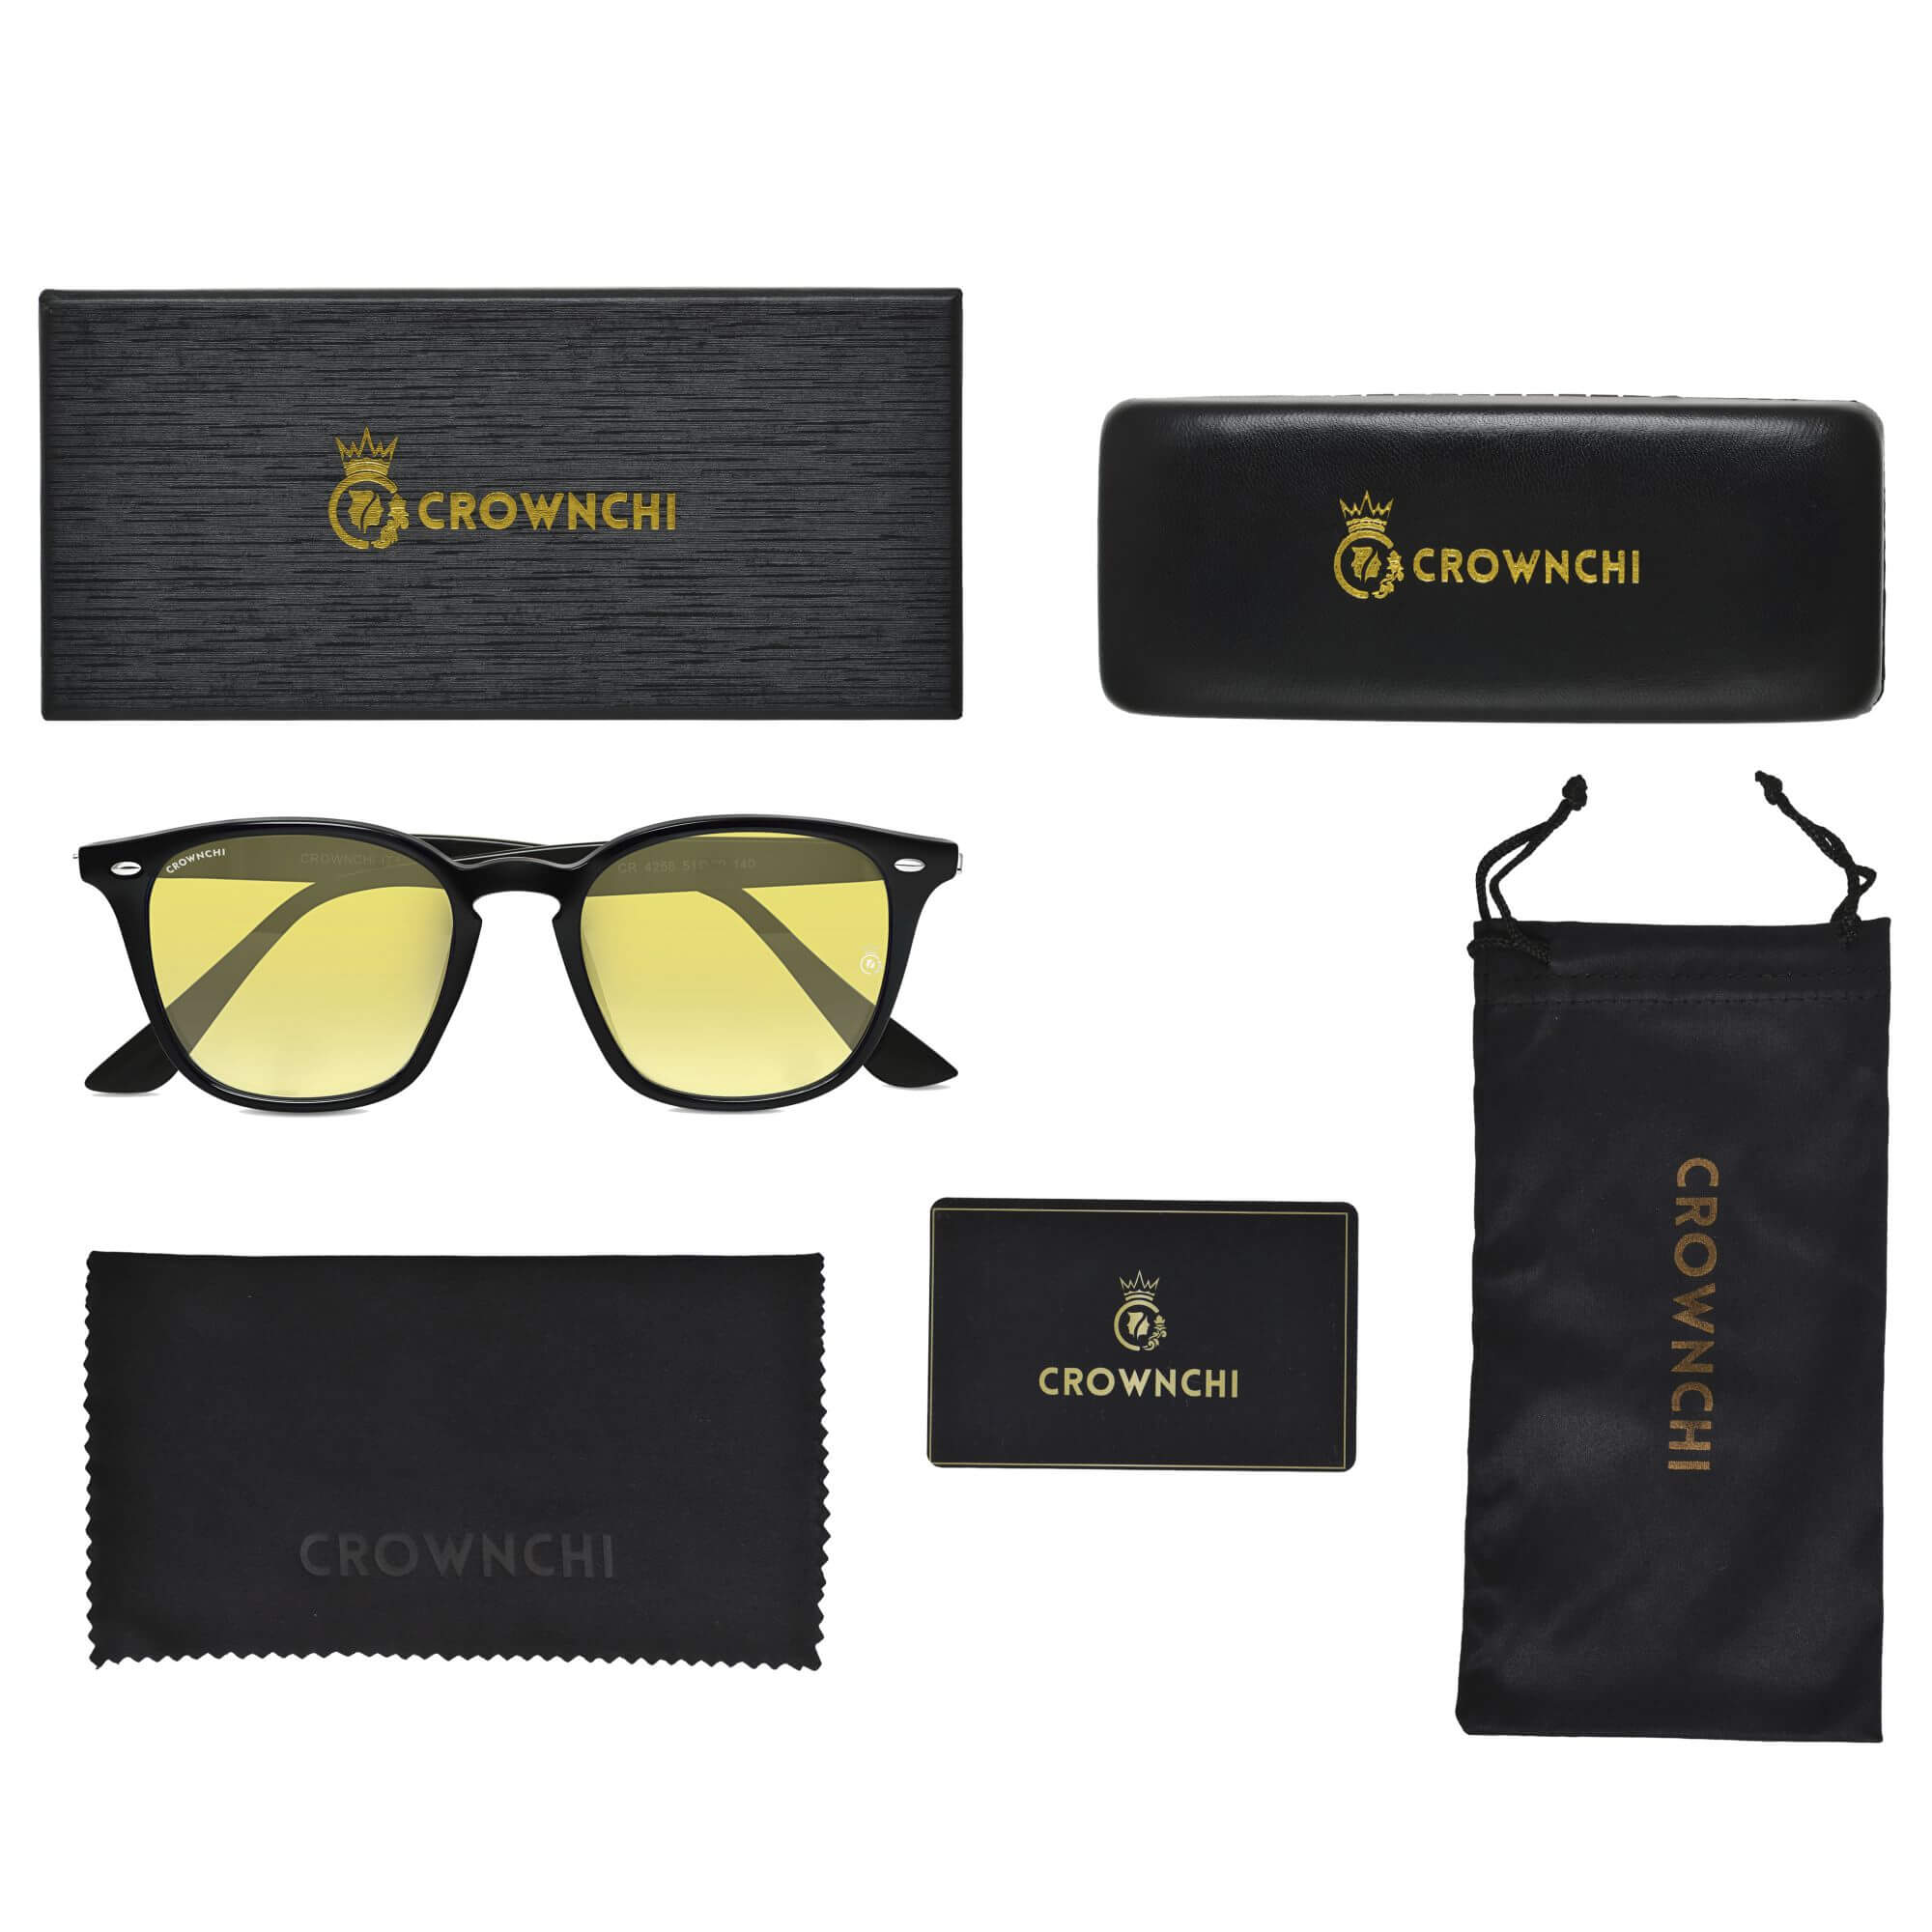 Asgard Black Yellow Square Edition Sunglasses